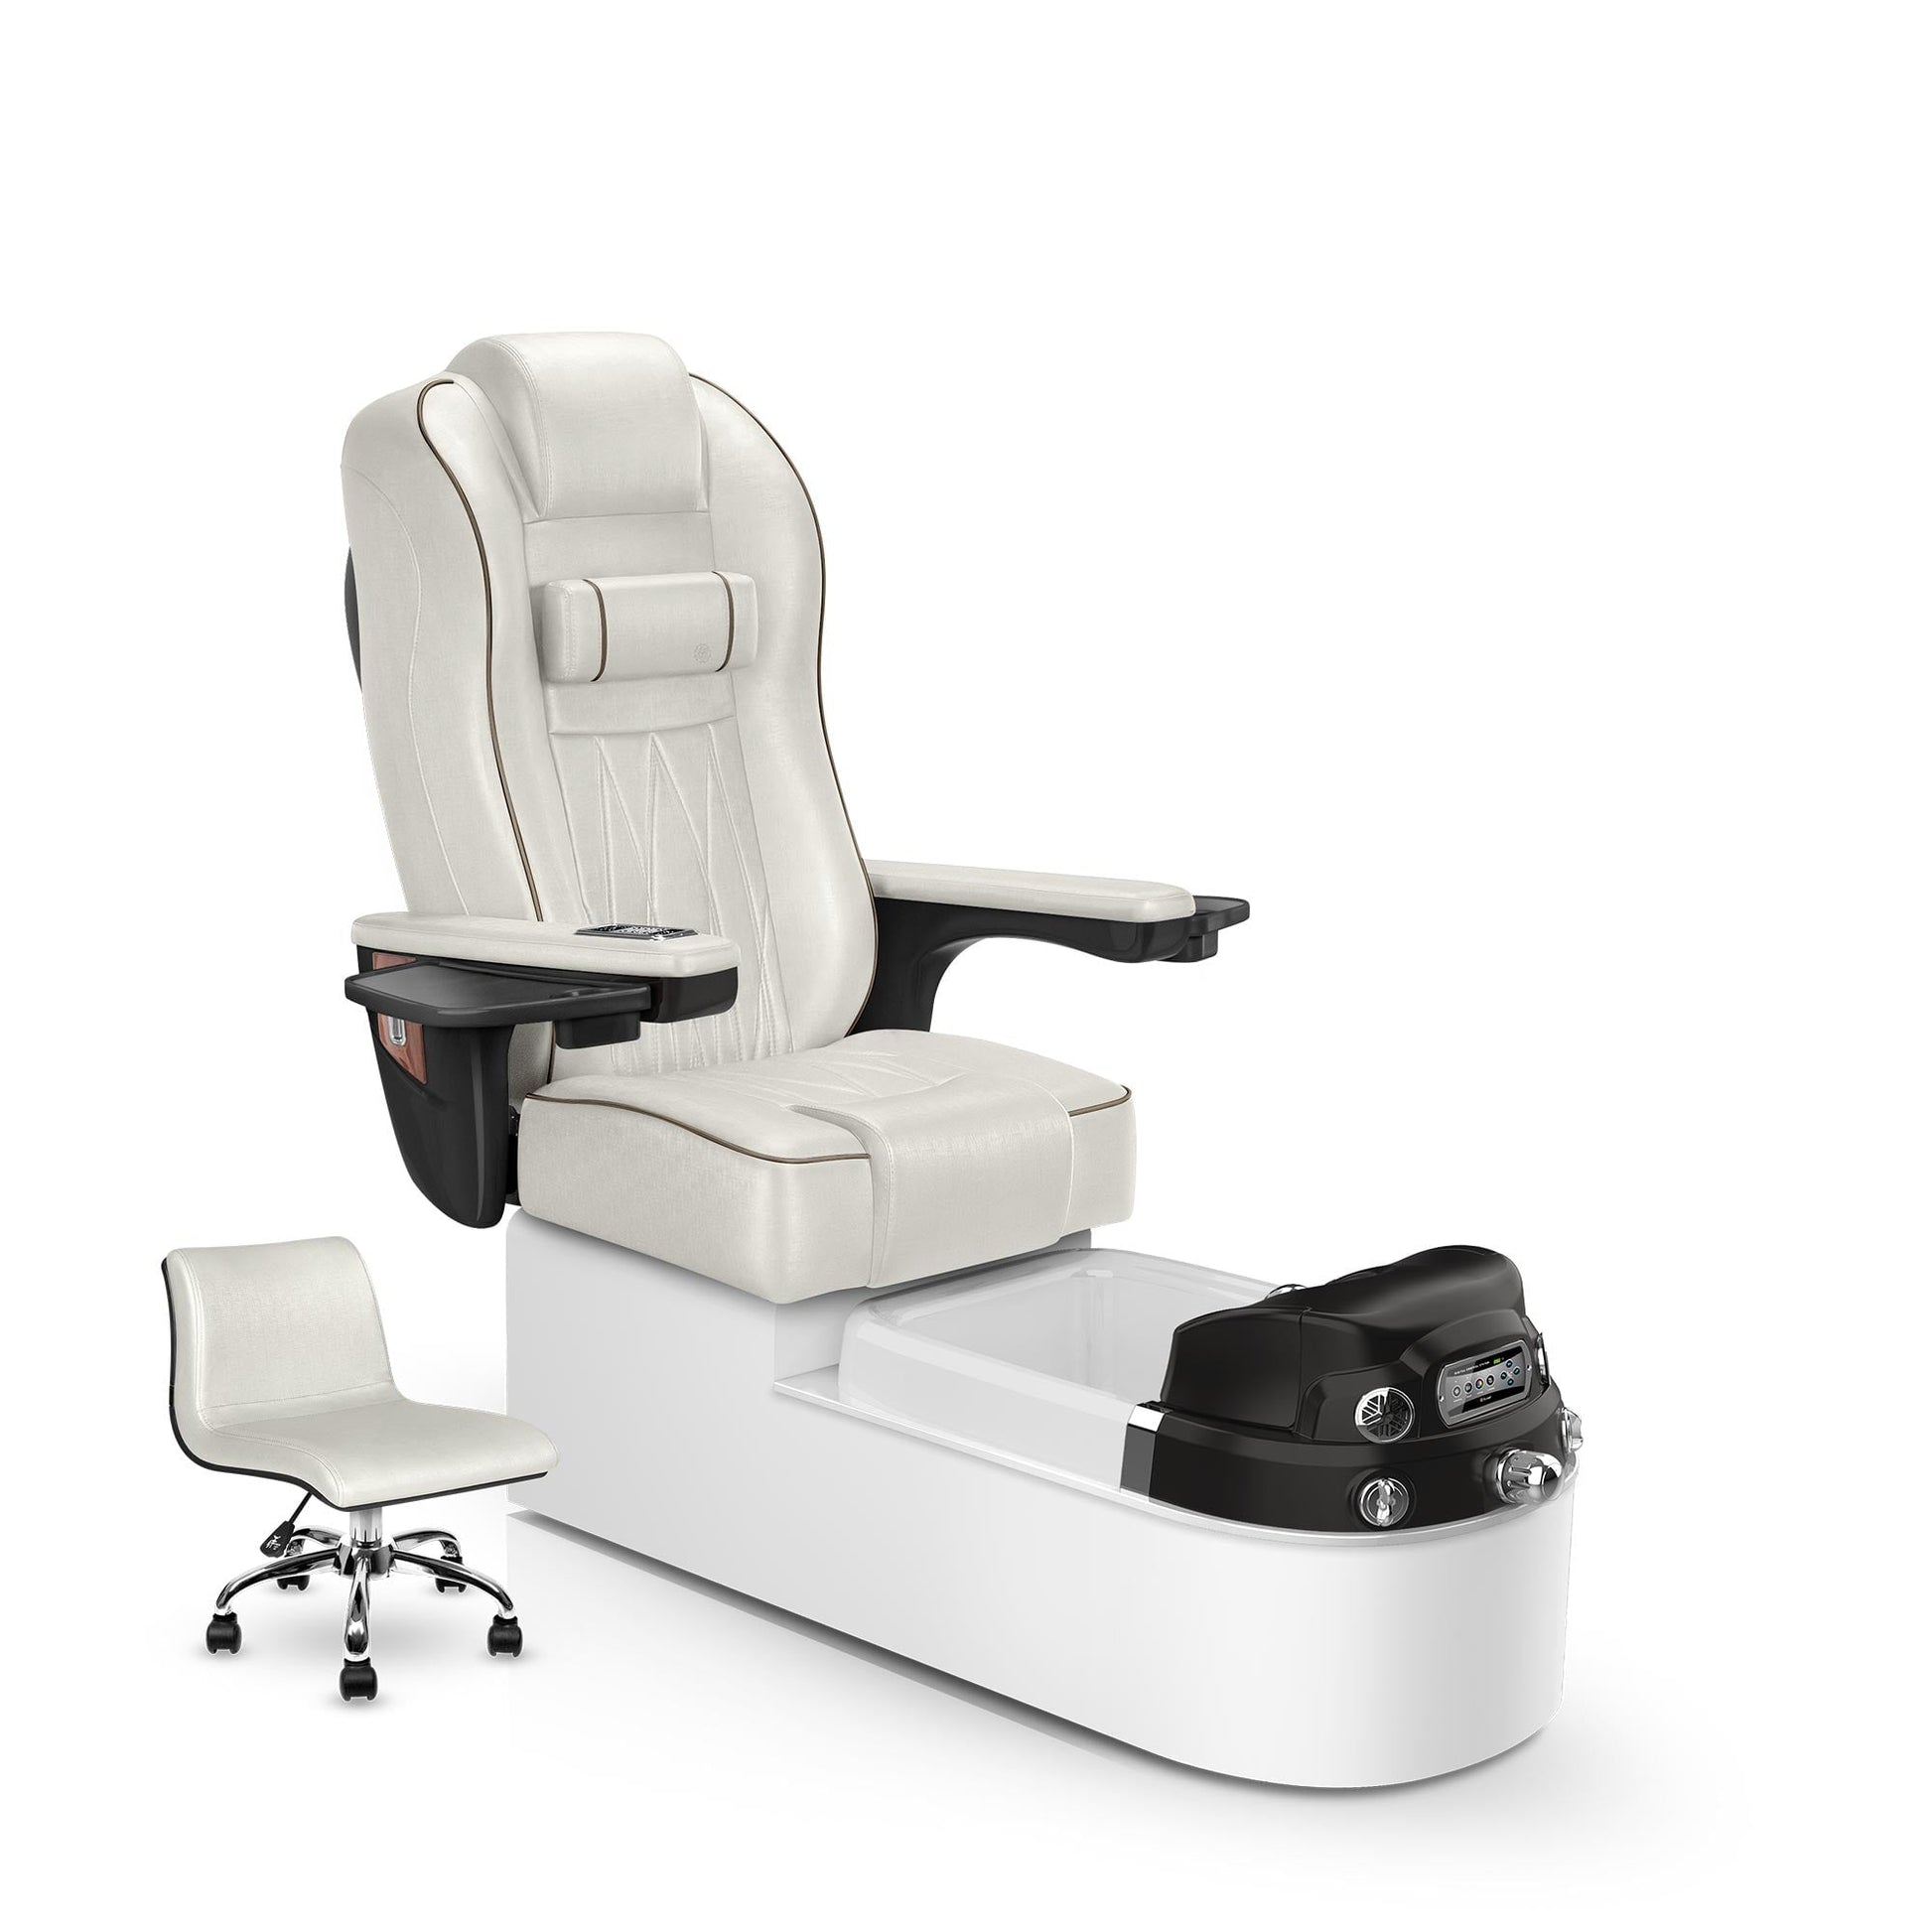 Lexor Envision pedicure chair opal cushion and white pearl base